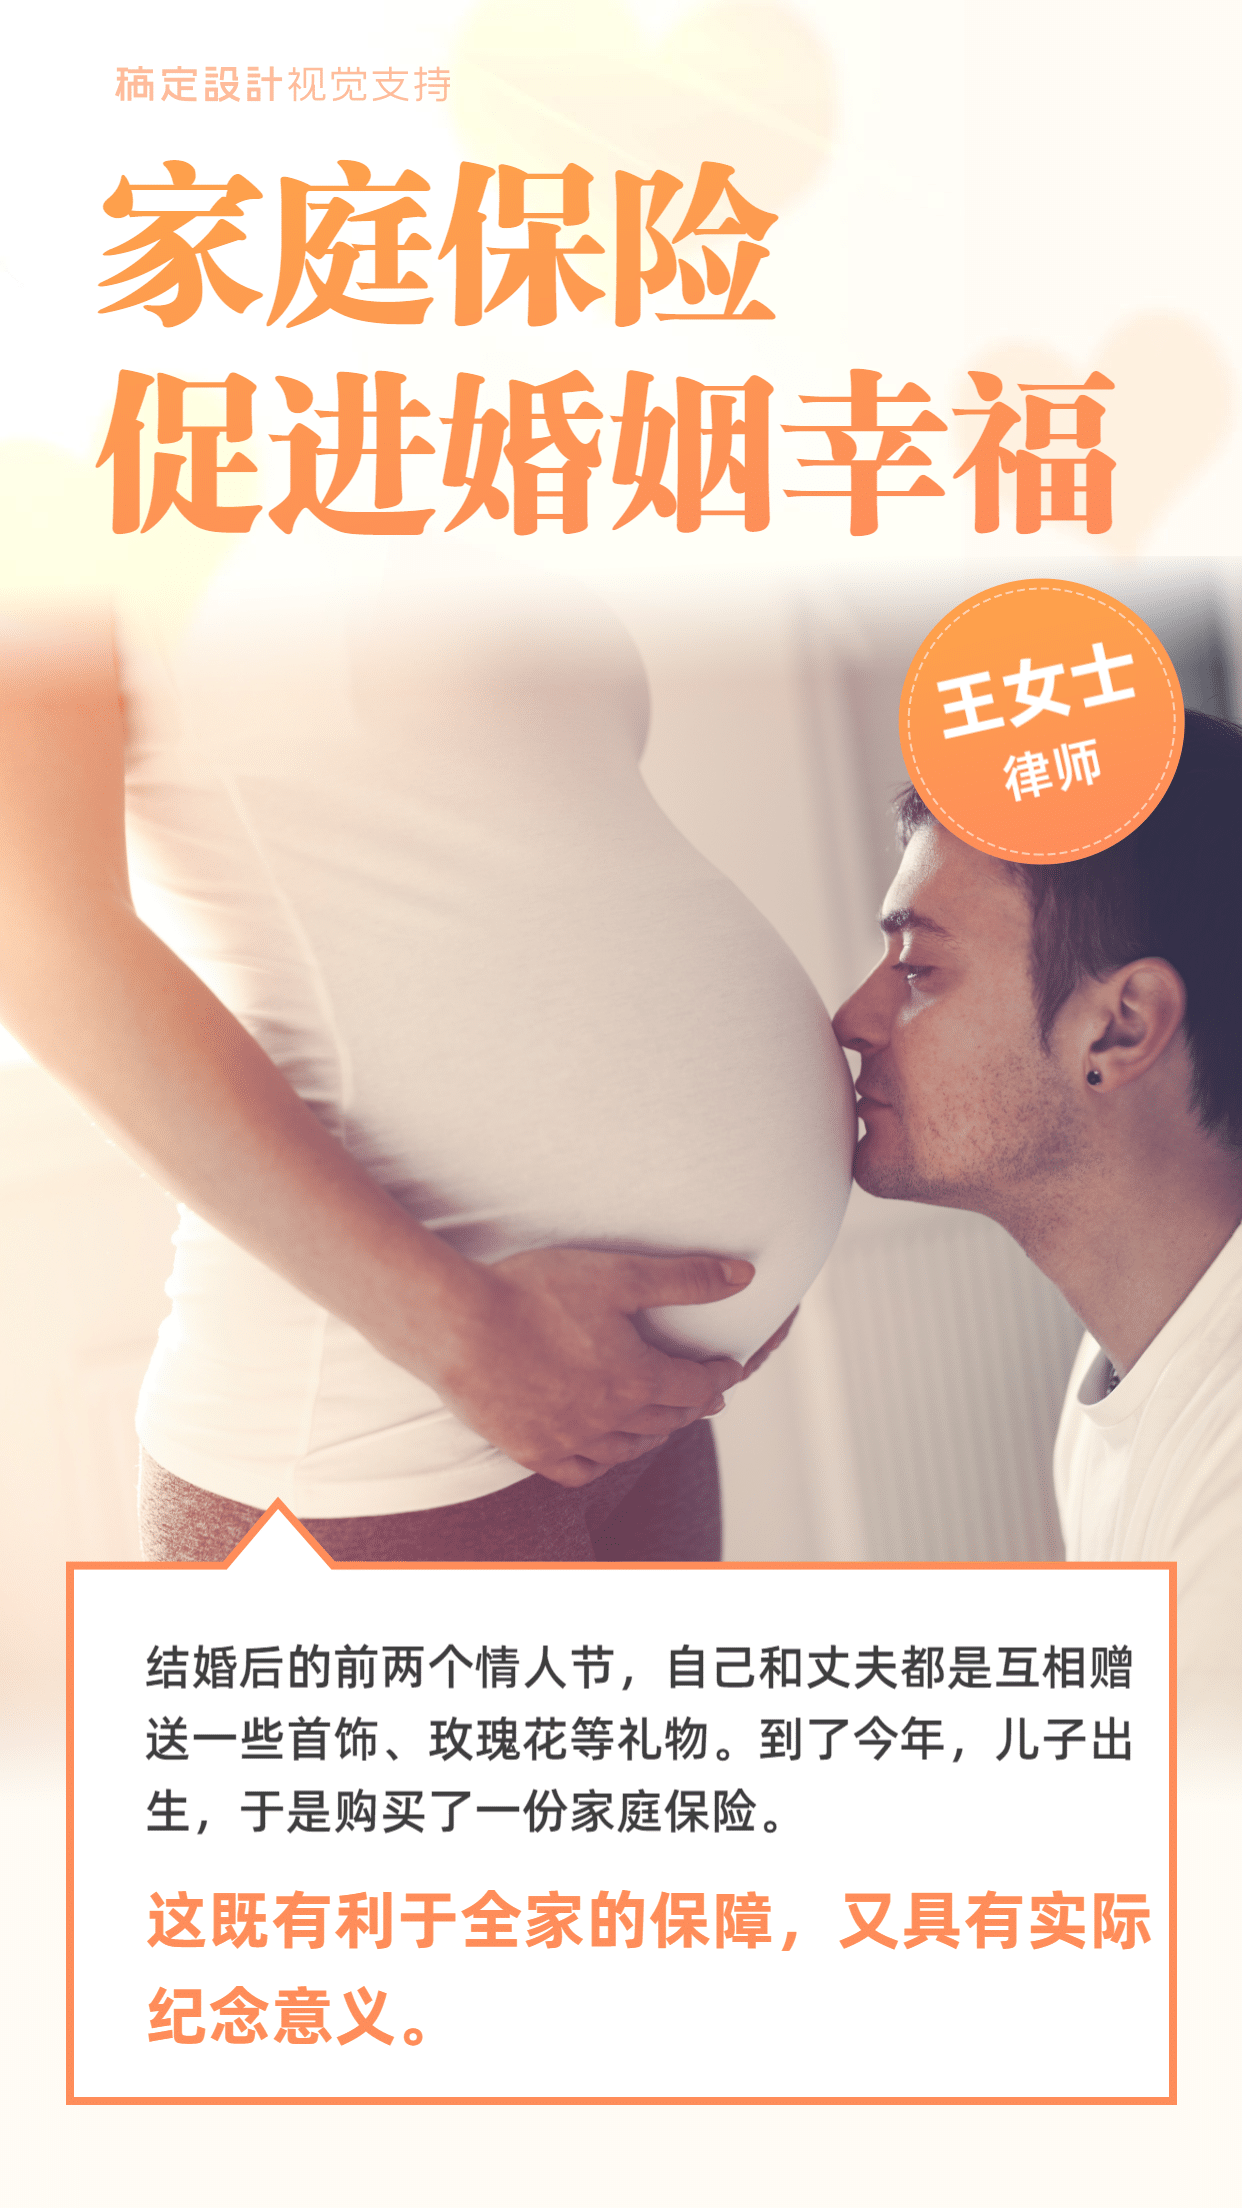 七夕节家庭保险营销海报预览效果